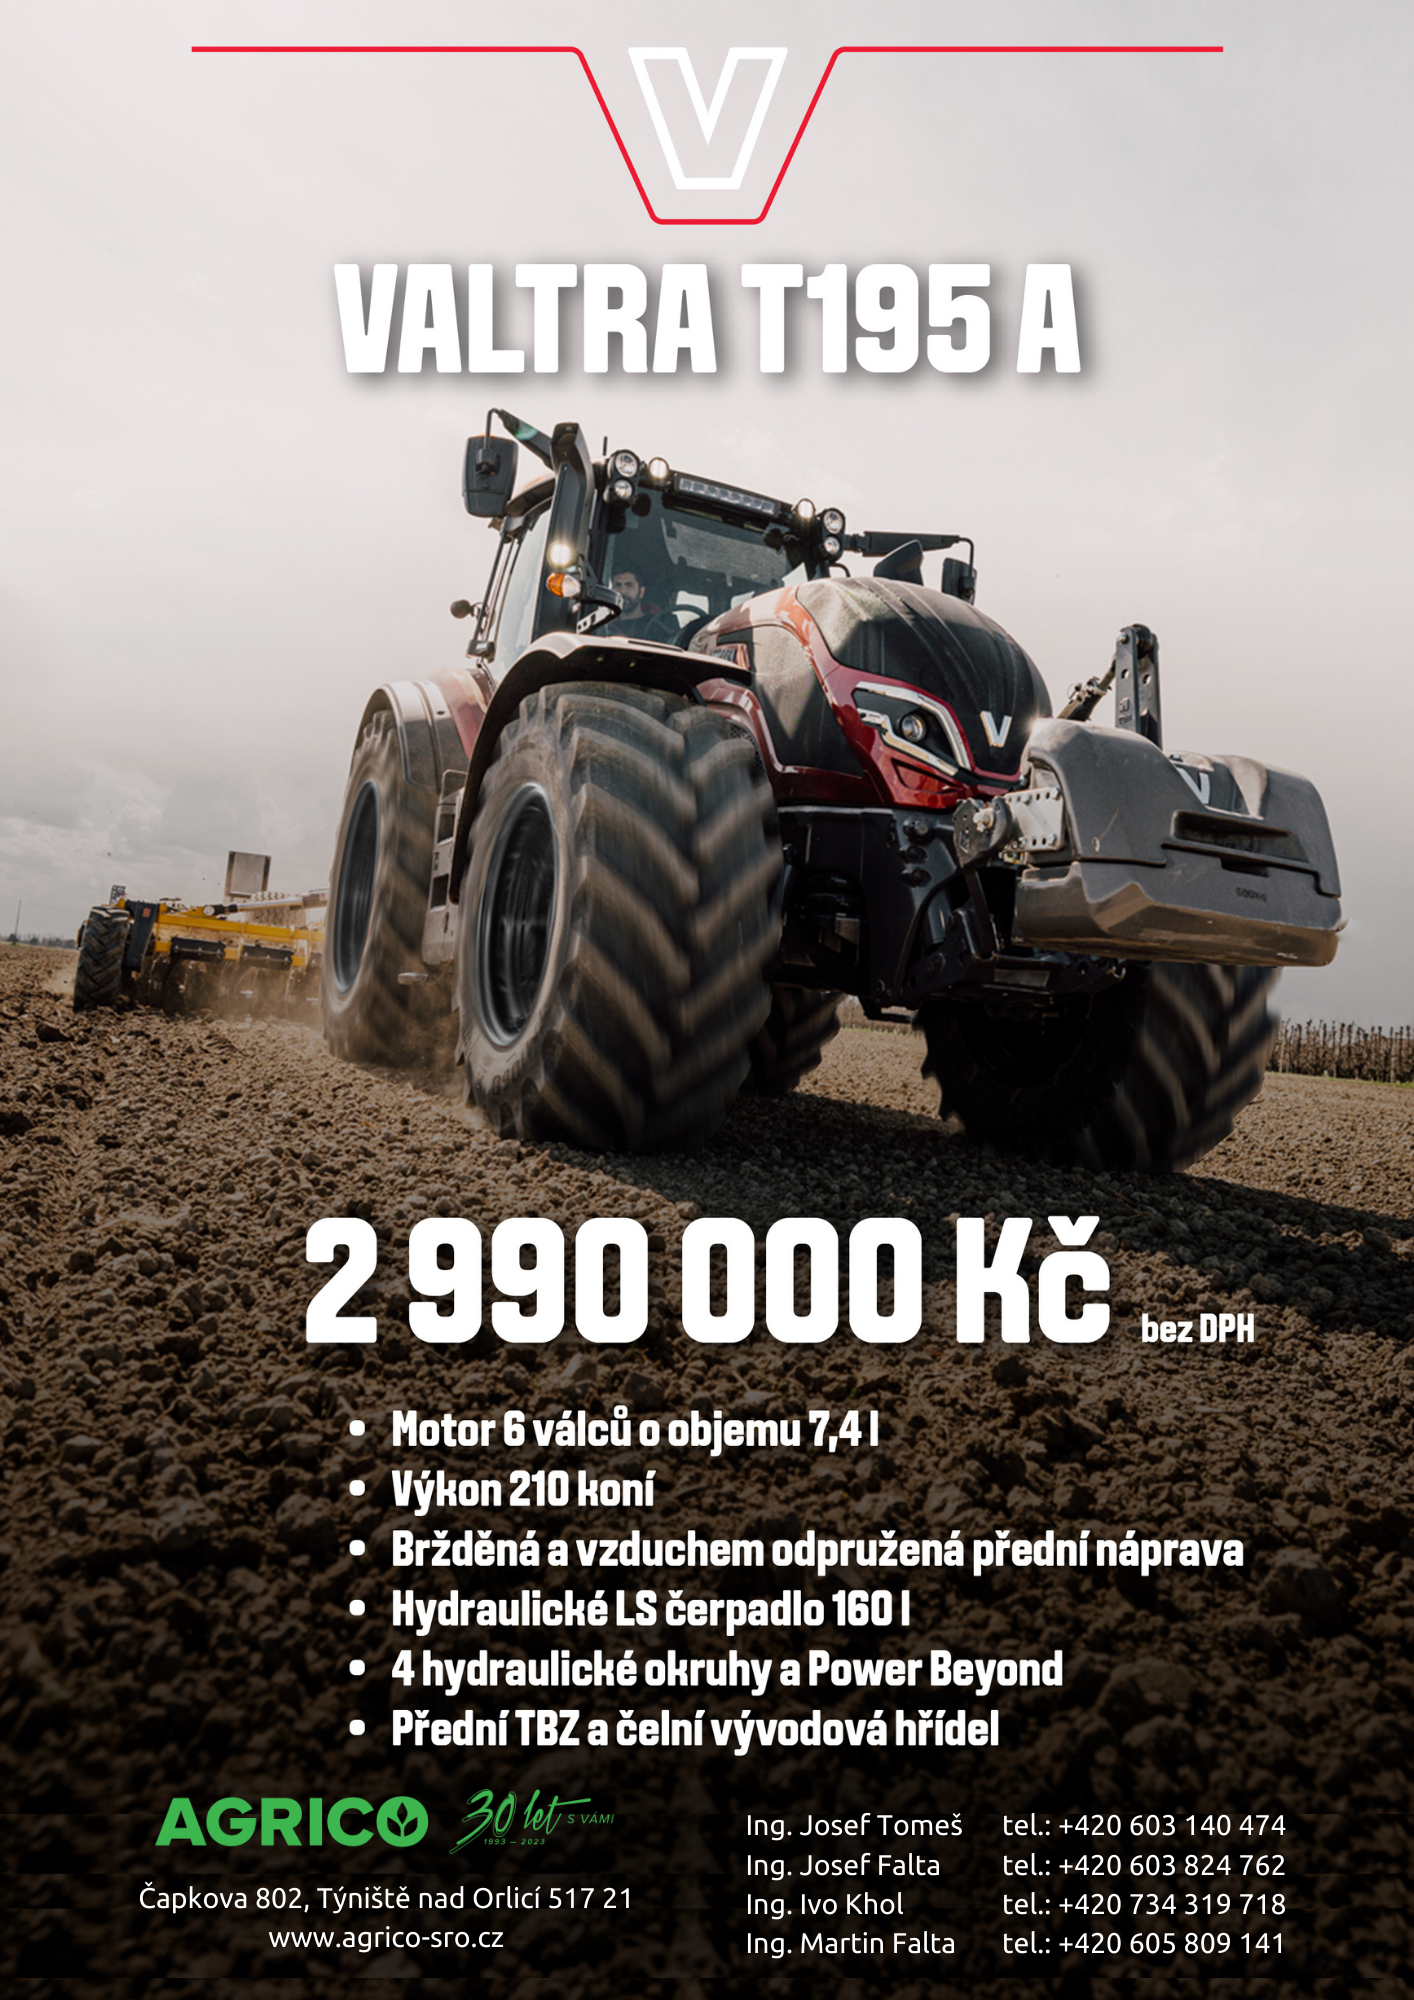 leTní sprinT kampaň VALTRA T195A_web